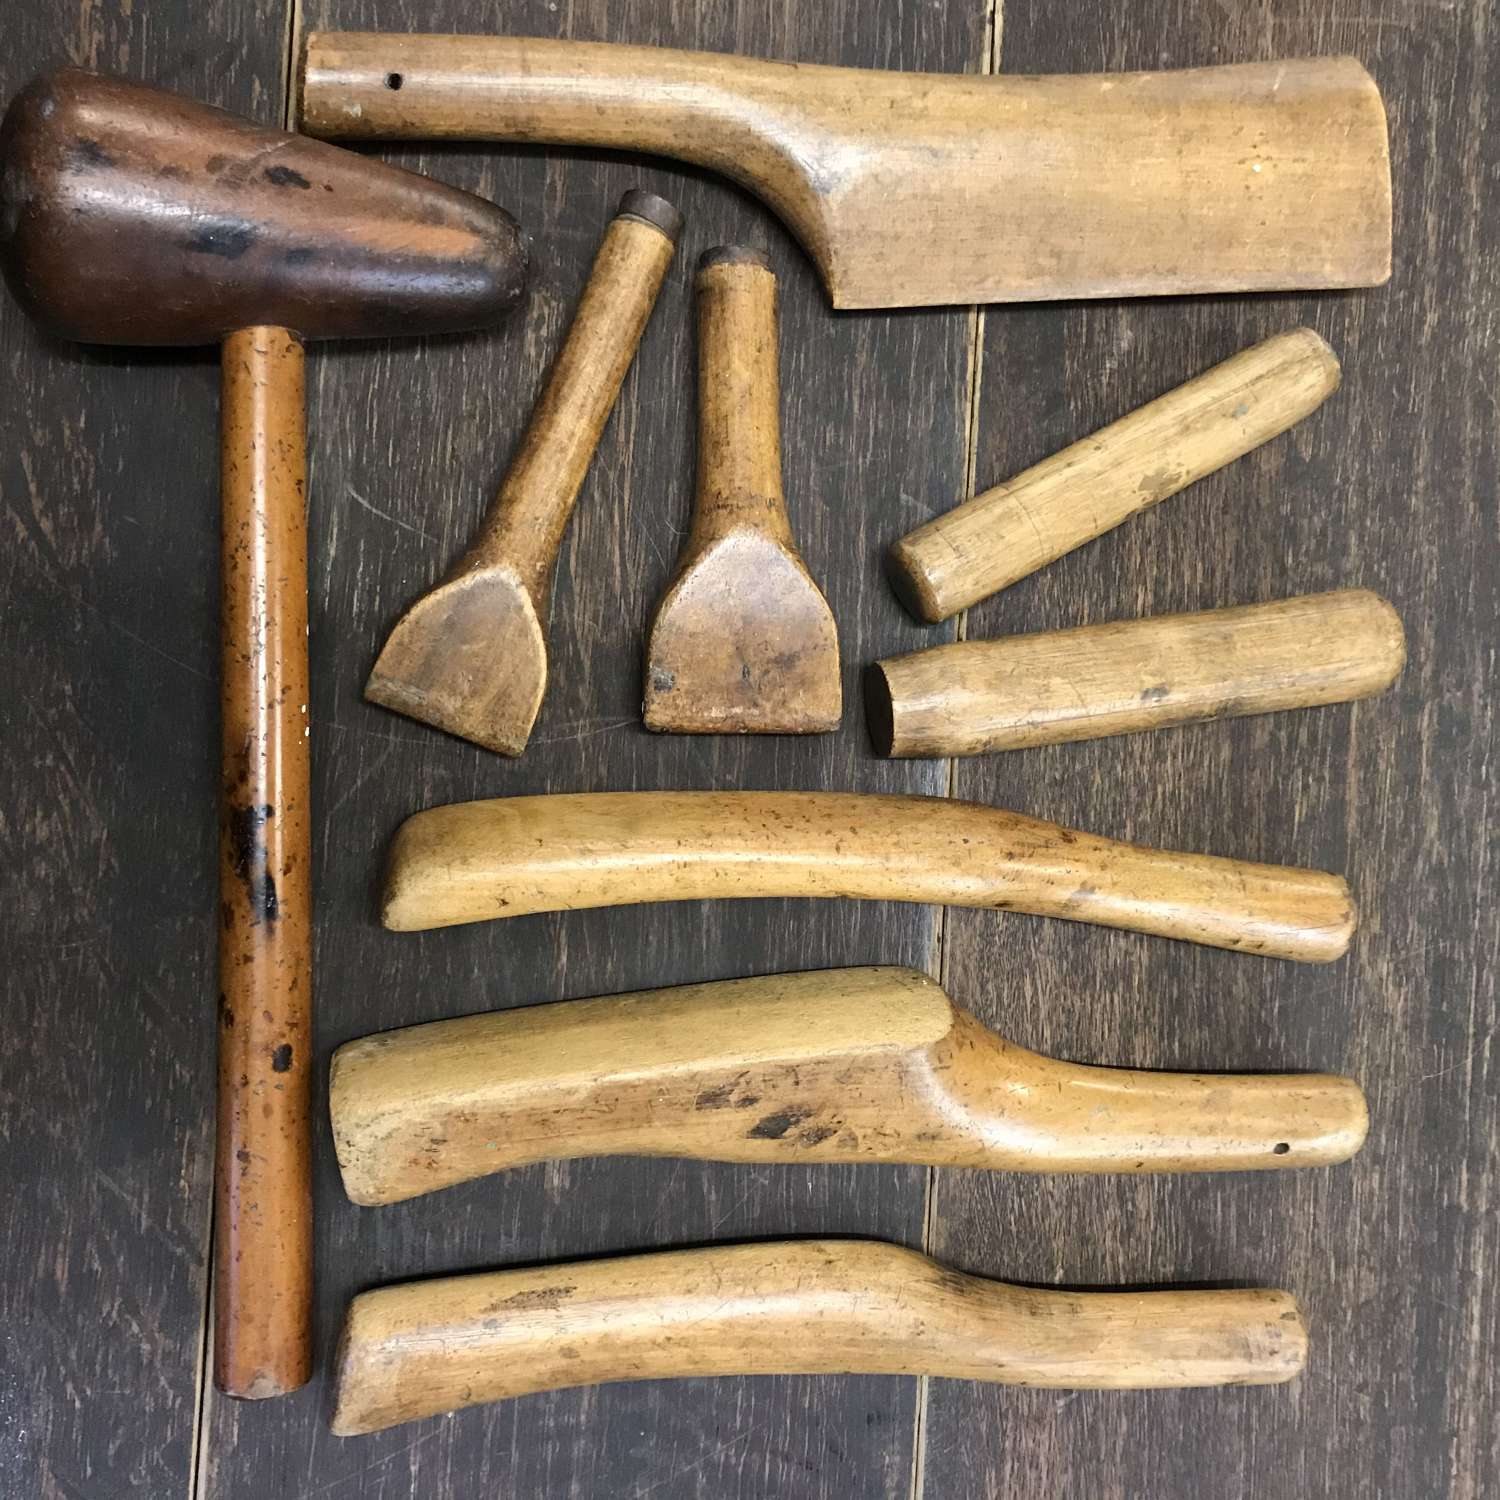 Vintage Plumbers lead working tools